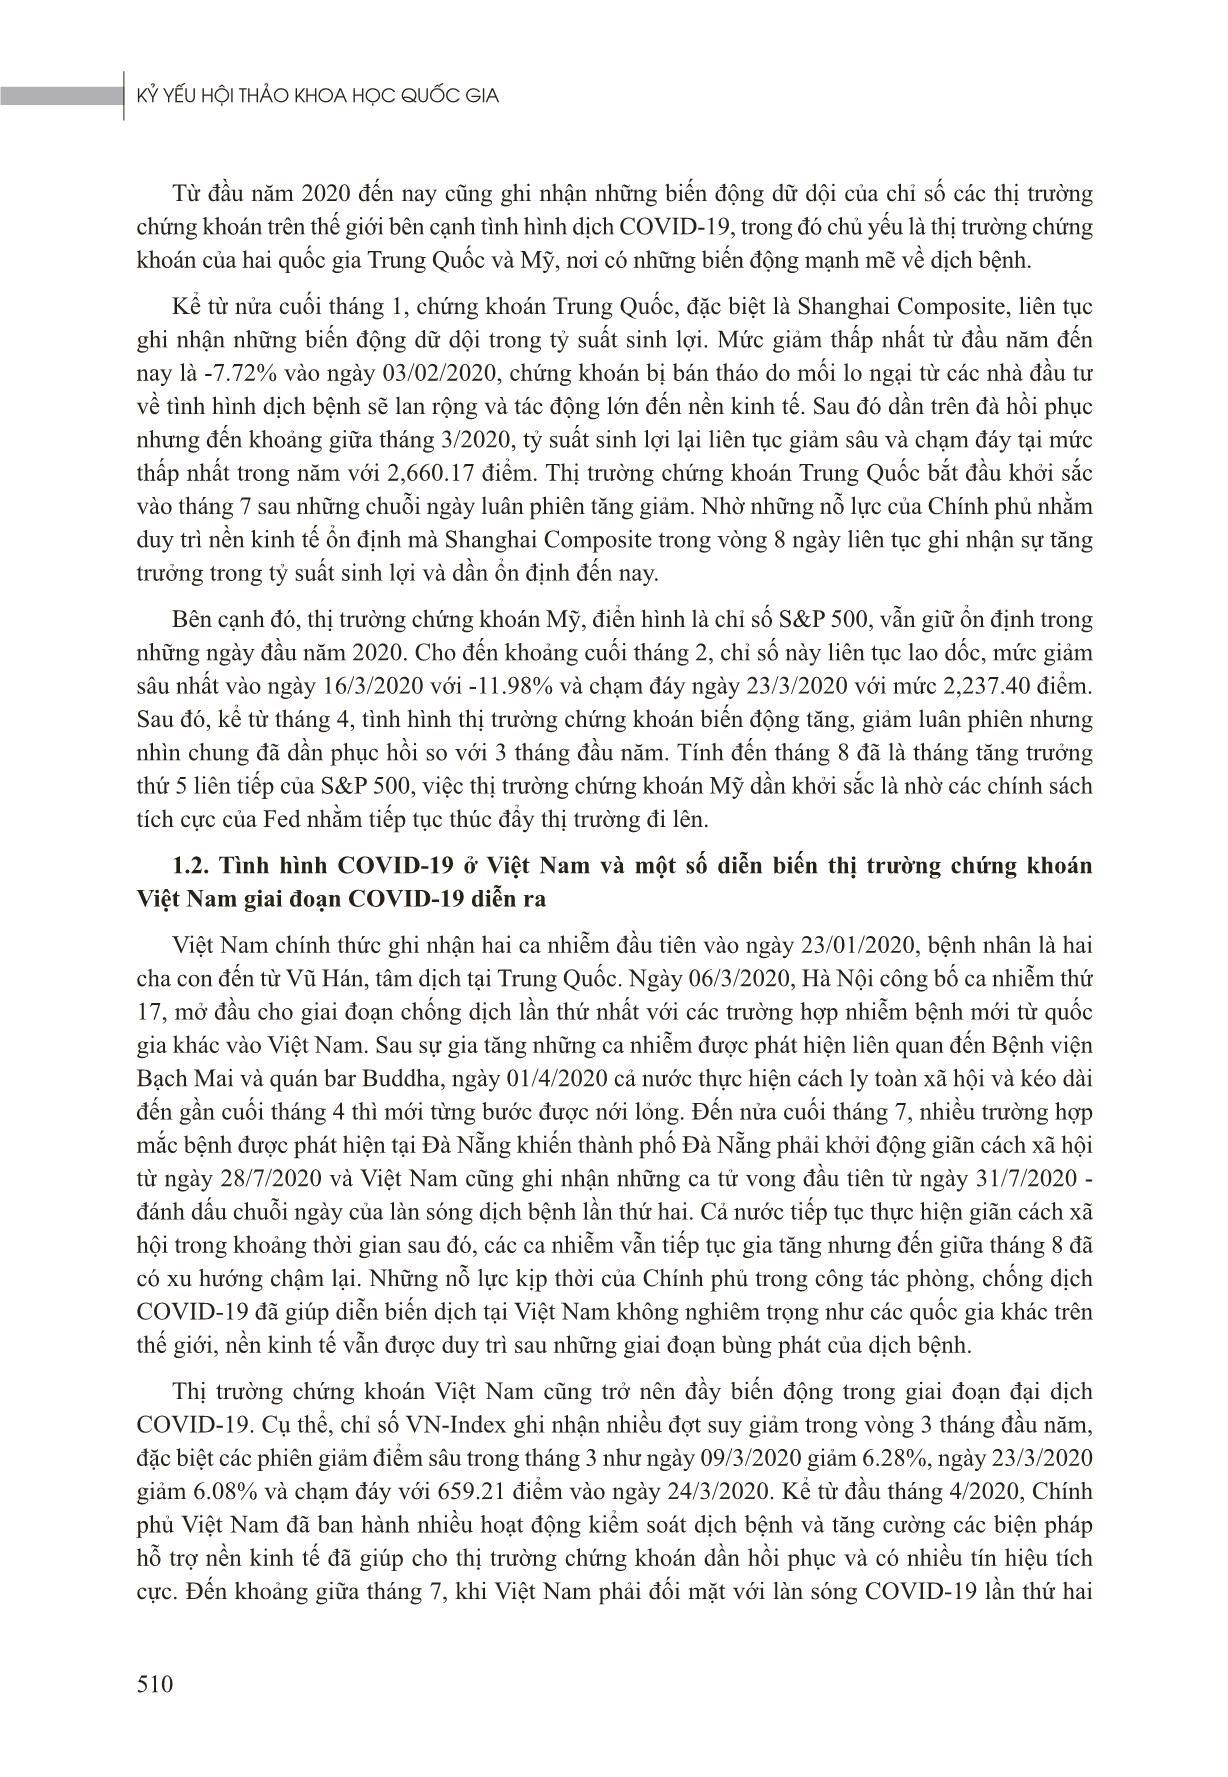 Khảo sát sự tác động của đại dịch Covid-19 đến thị trường chứng khoán Việt Nam trang 2